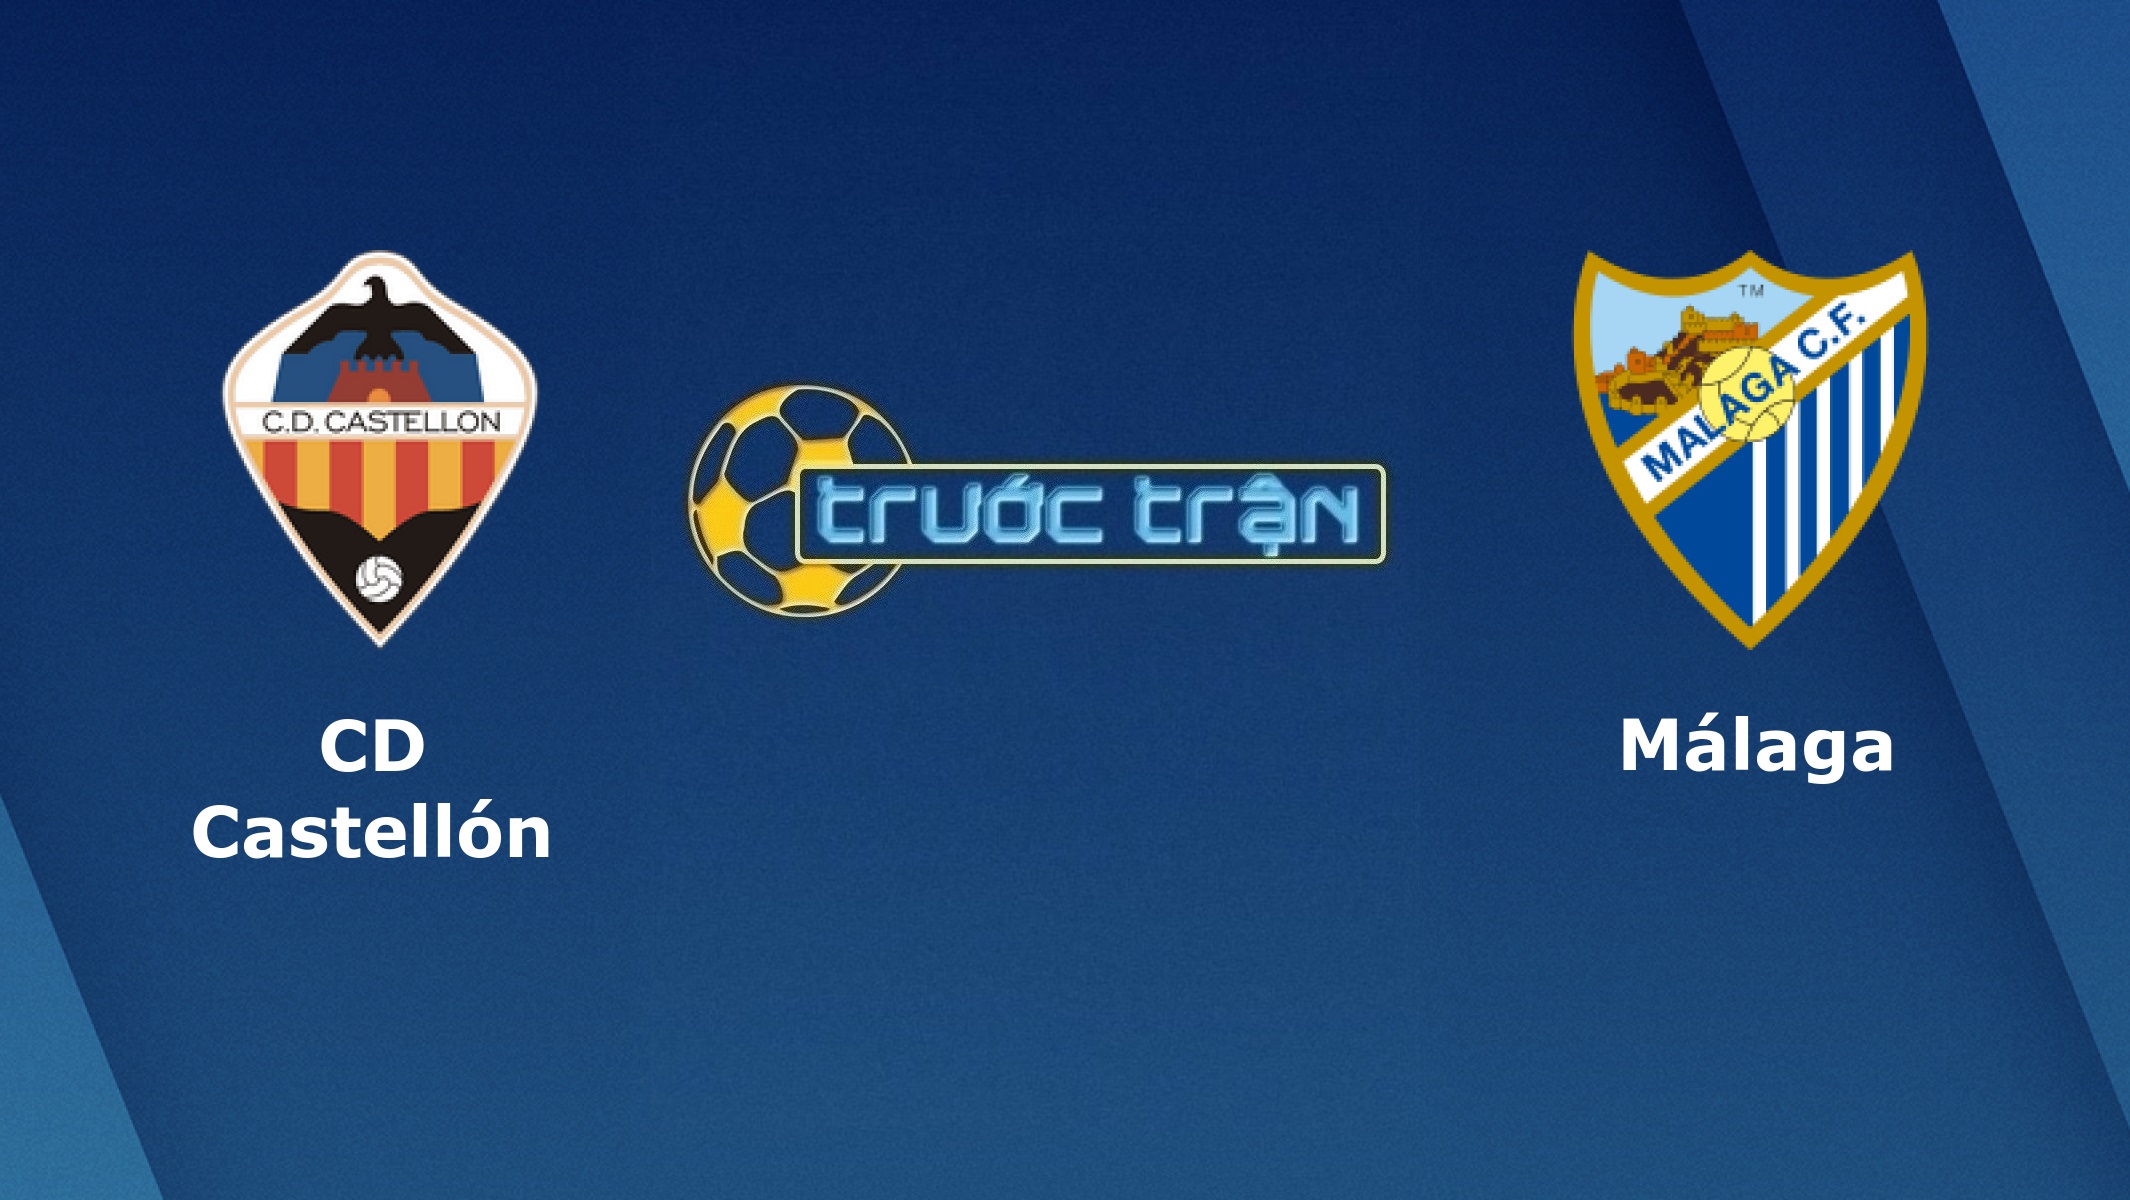 CD Castellon vs Malaga – Tip kèo bóng đá hôm nay – 19/09